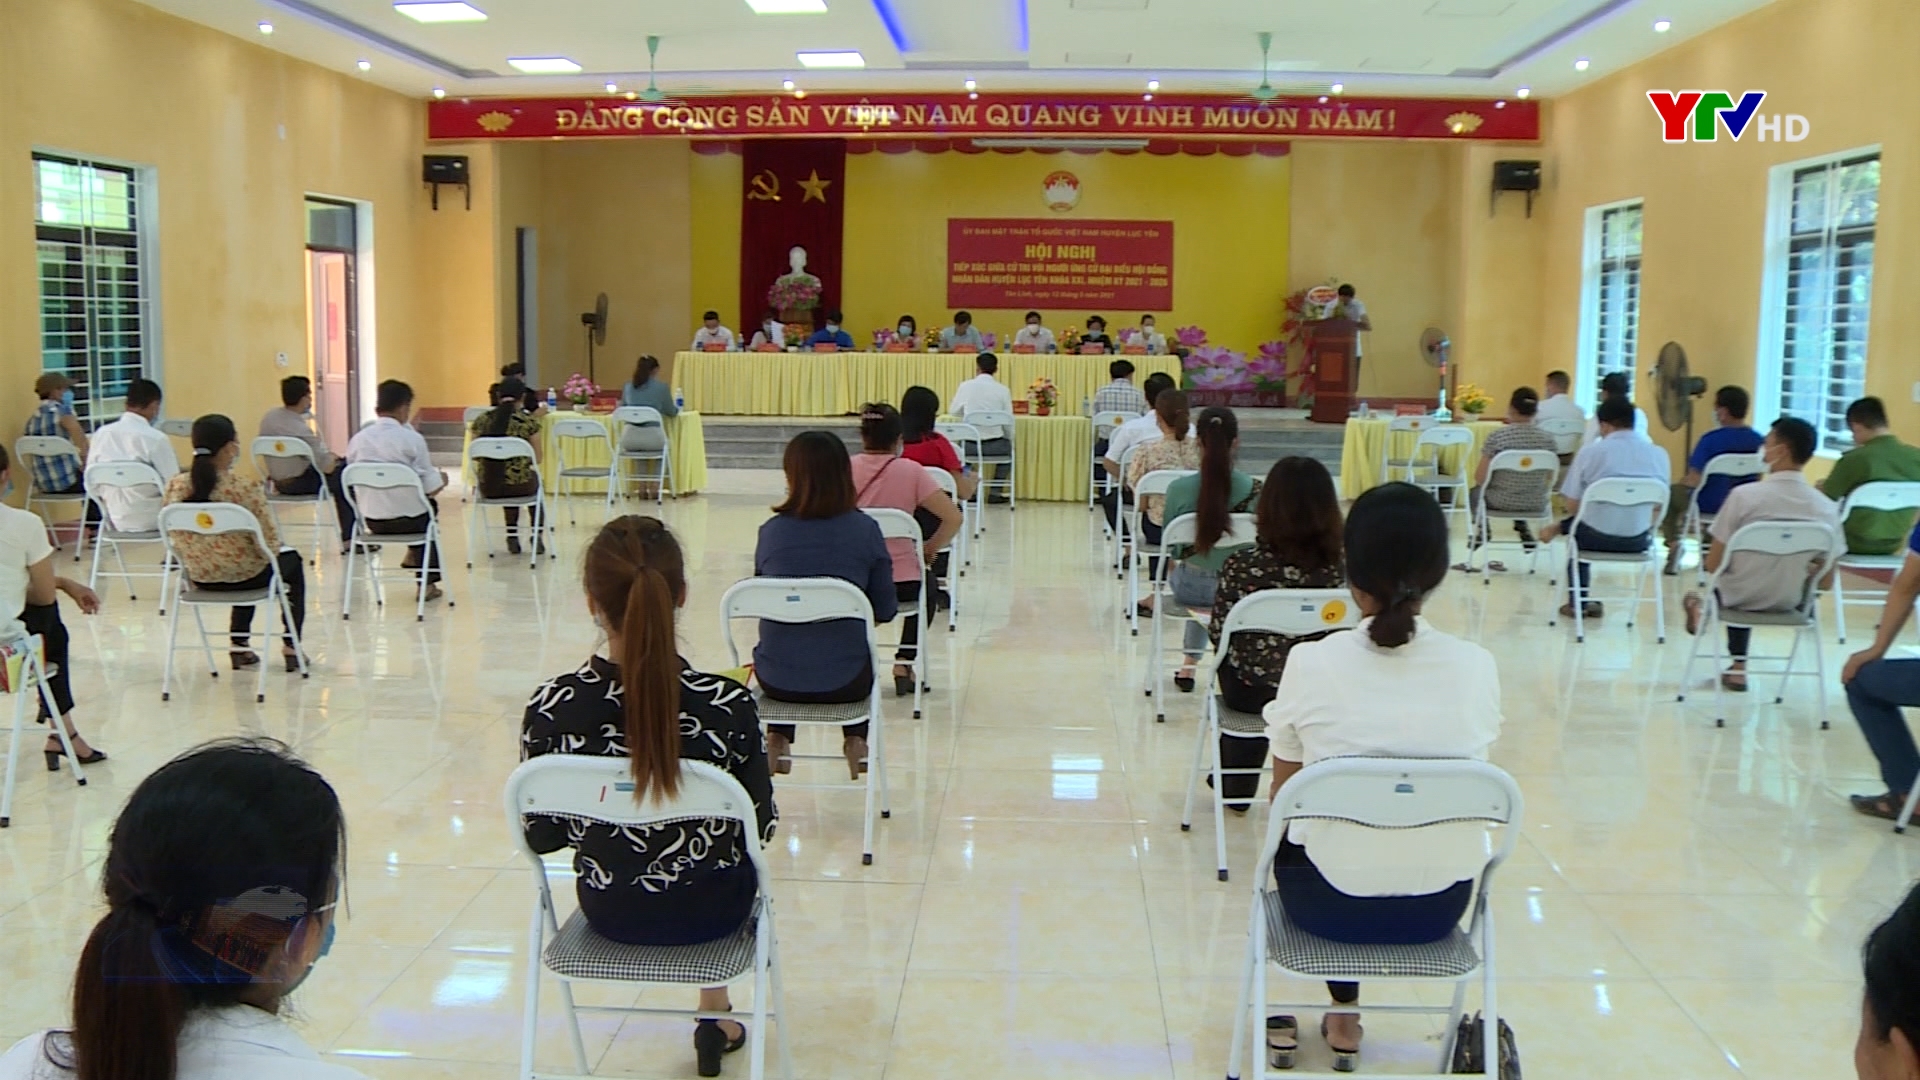 Ủy ban MTTQ huyện Lục Yên hoàn thành tổ chức các hội nghị tiếp xúc cử tri với những người ứng cử